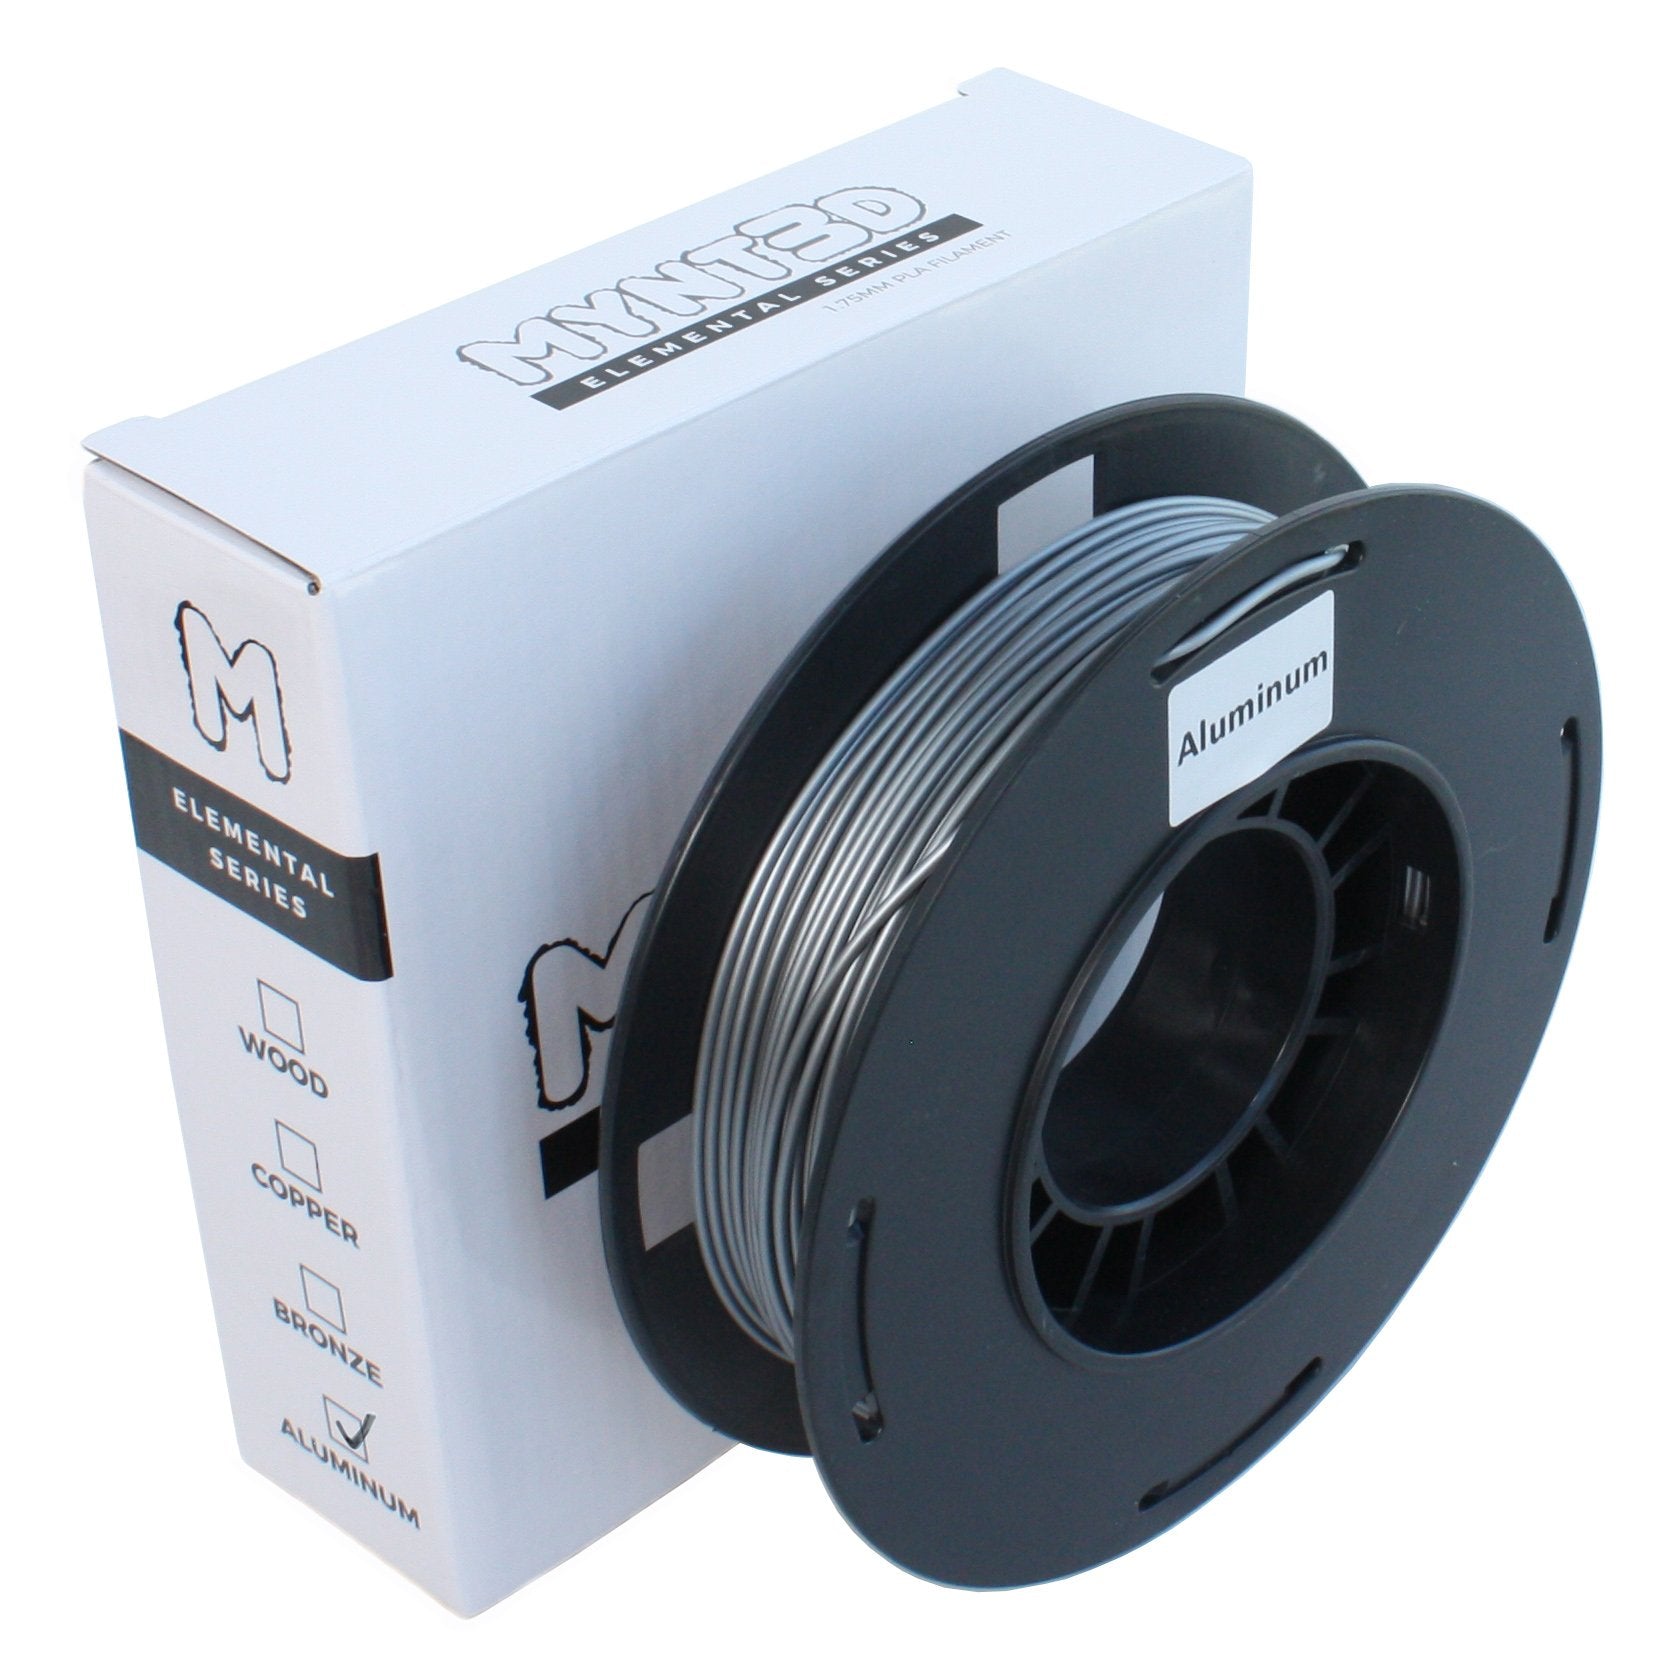 200g Aluminum PLA Filament Spool